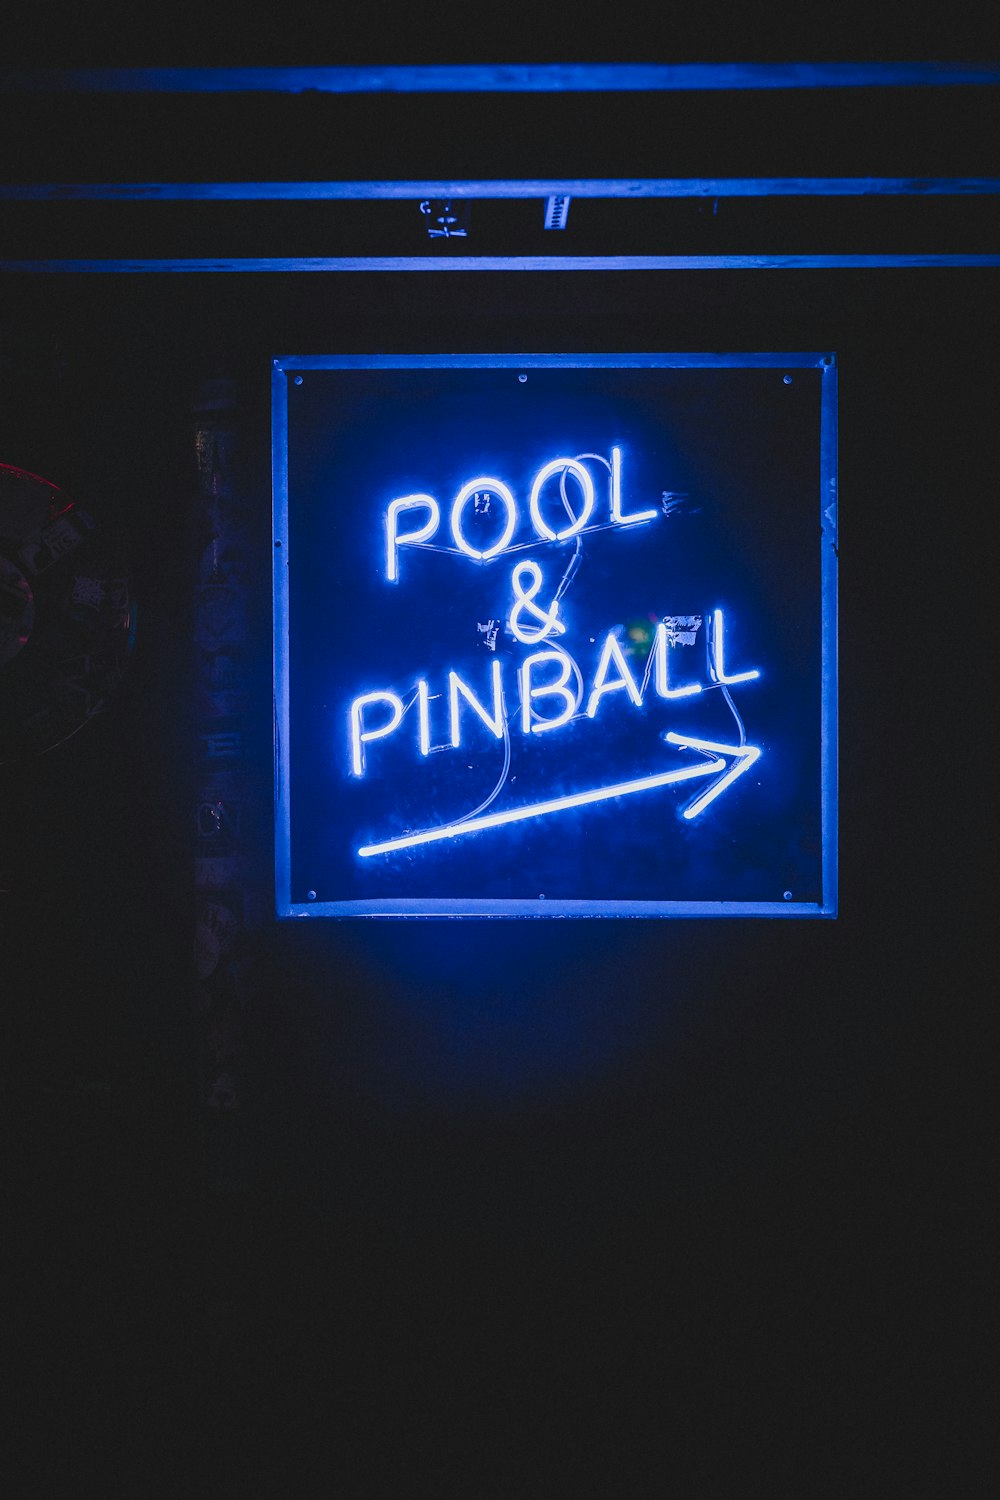 Piscina & Pinball sinalização de luz neon